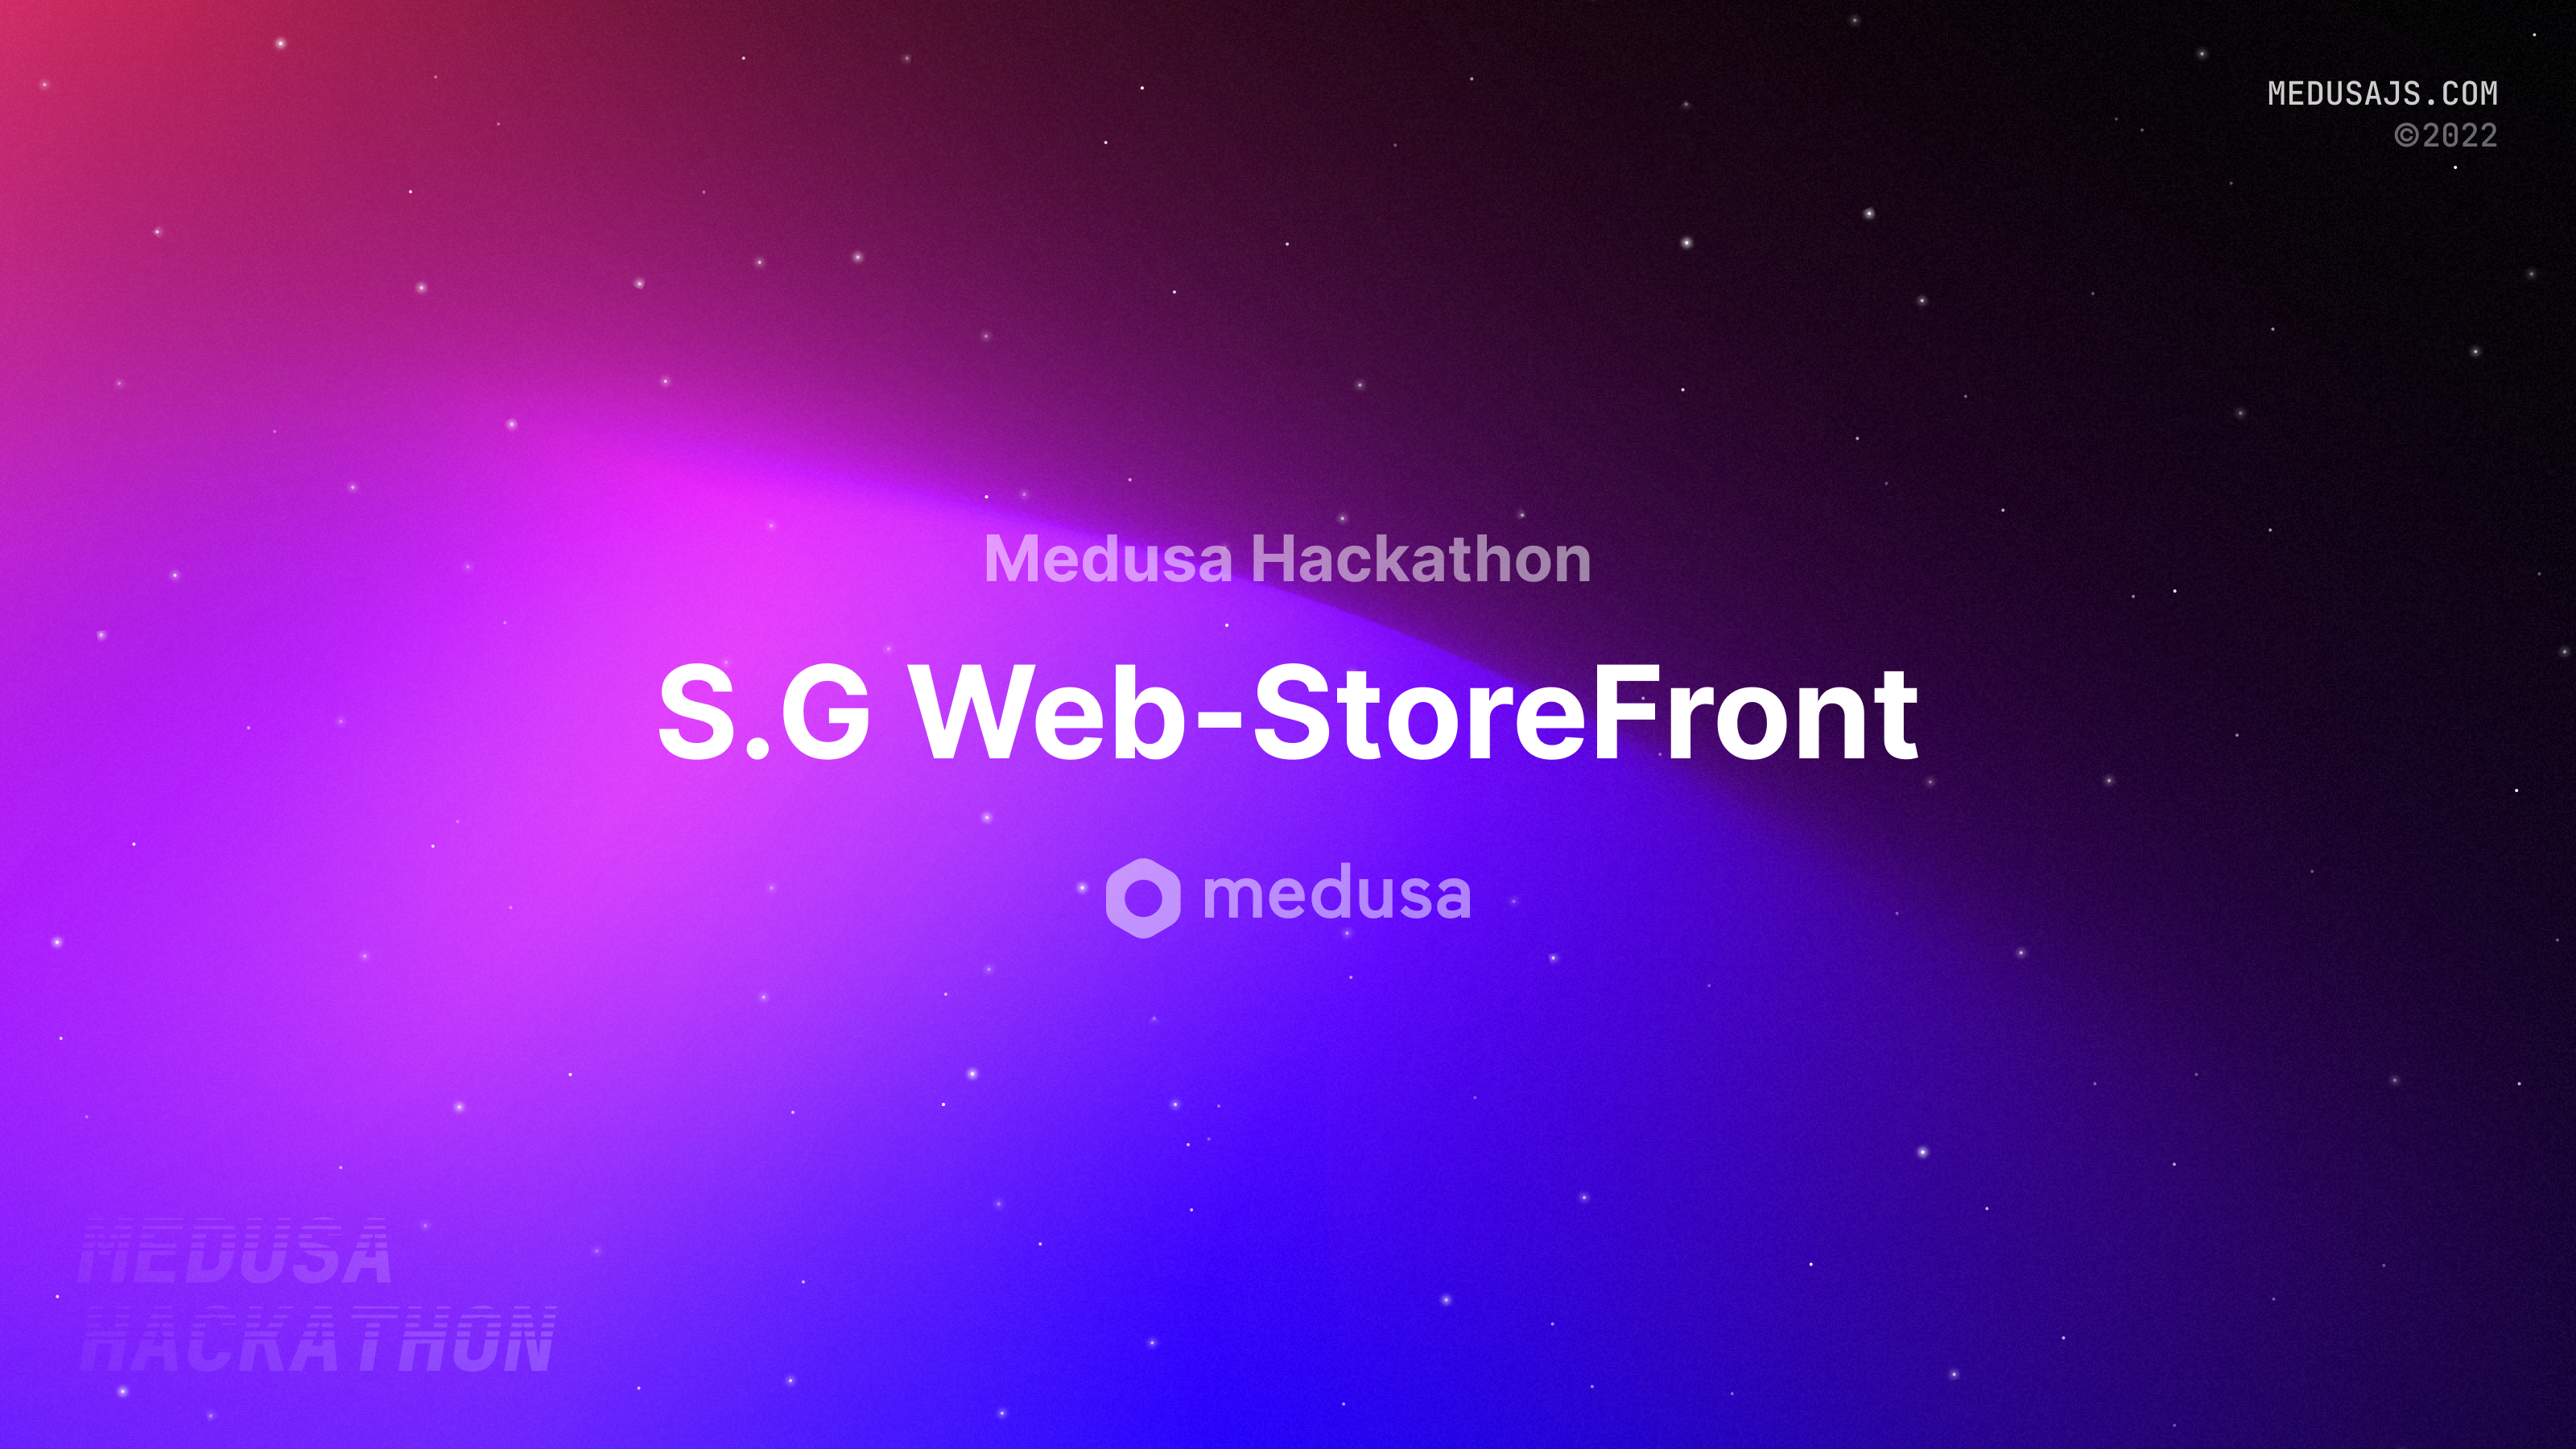 Medusa Hackathon 2022